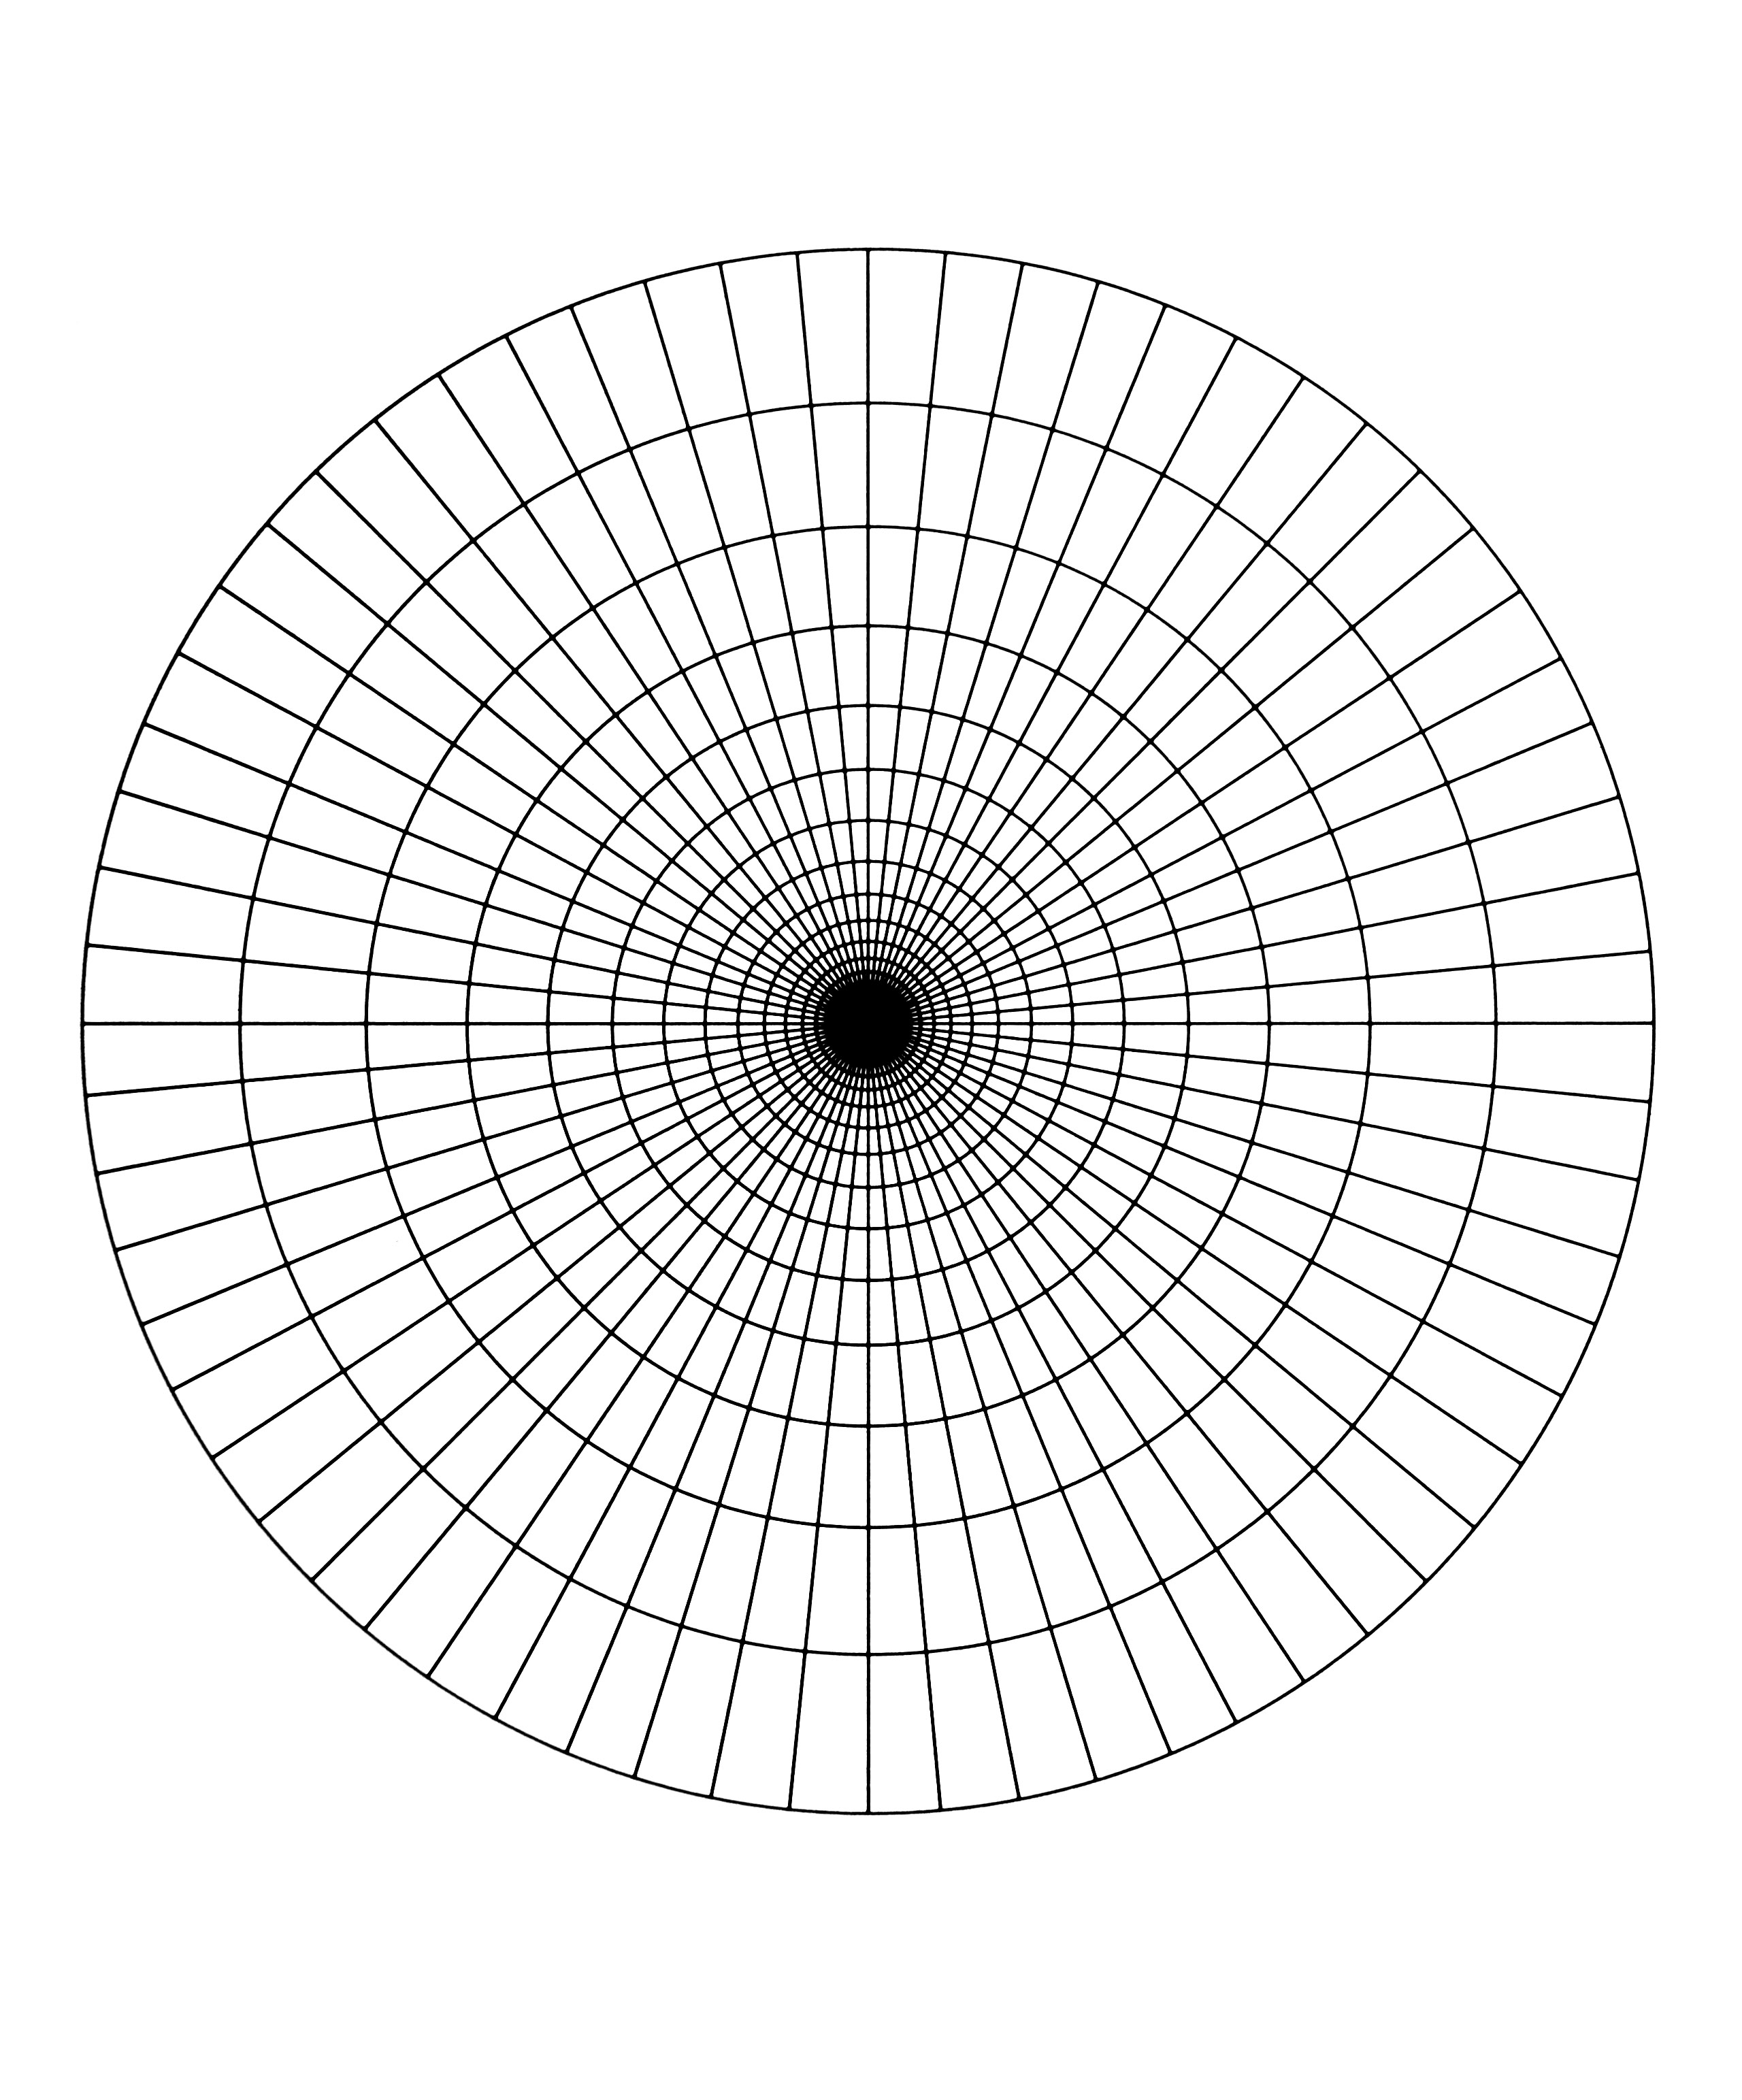 Mandala à télécharger avec une succession de cercle concentrique se joignant en un disque noir.Assez facile à colorier.